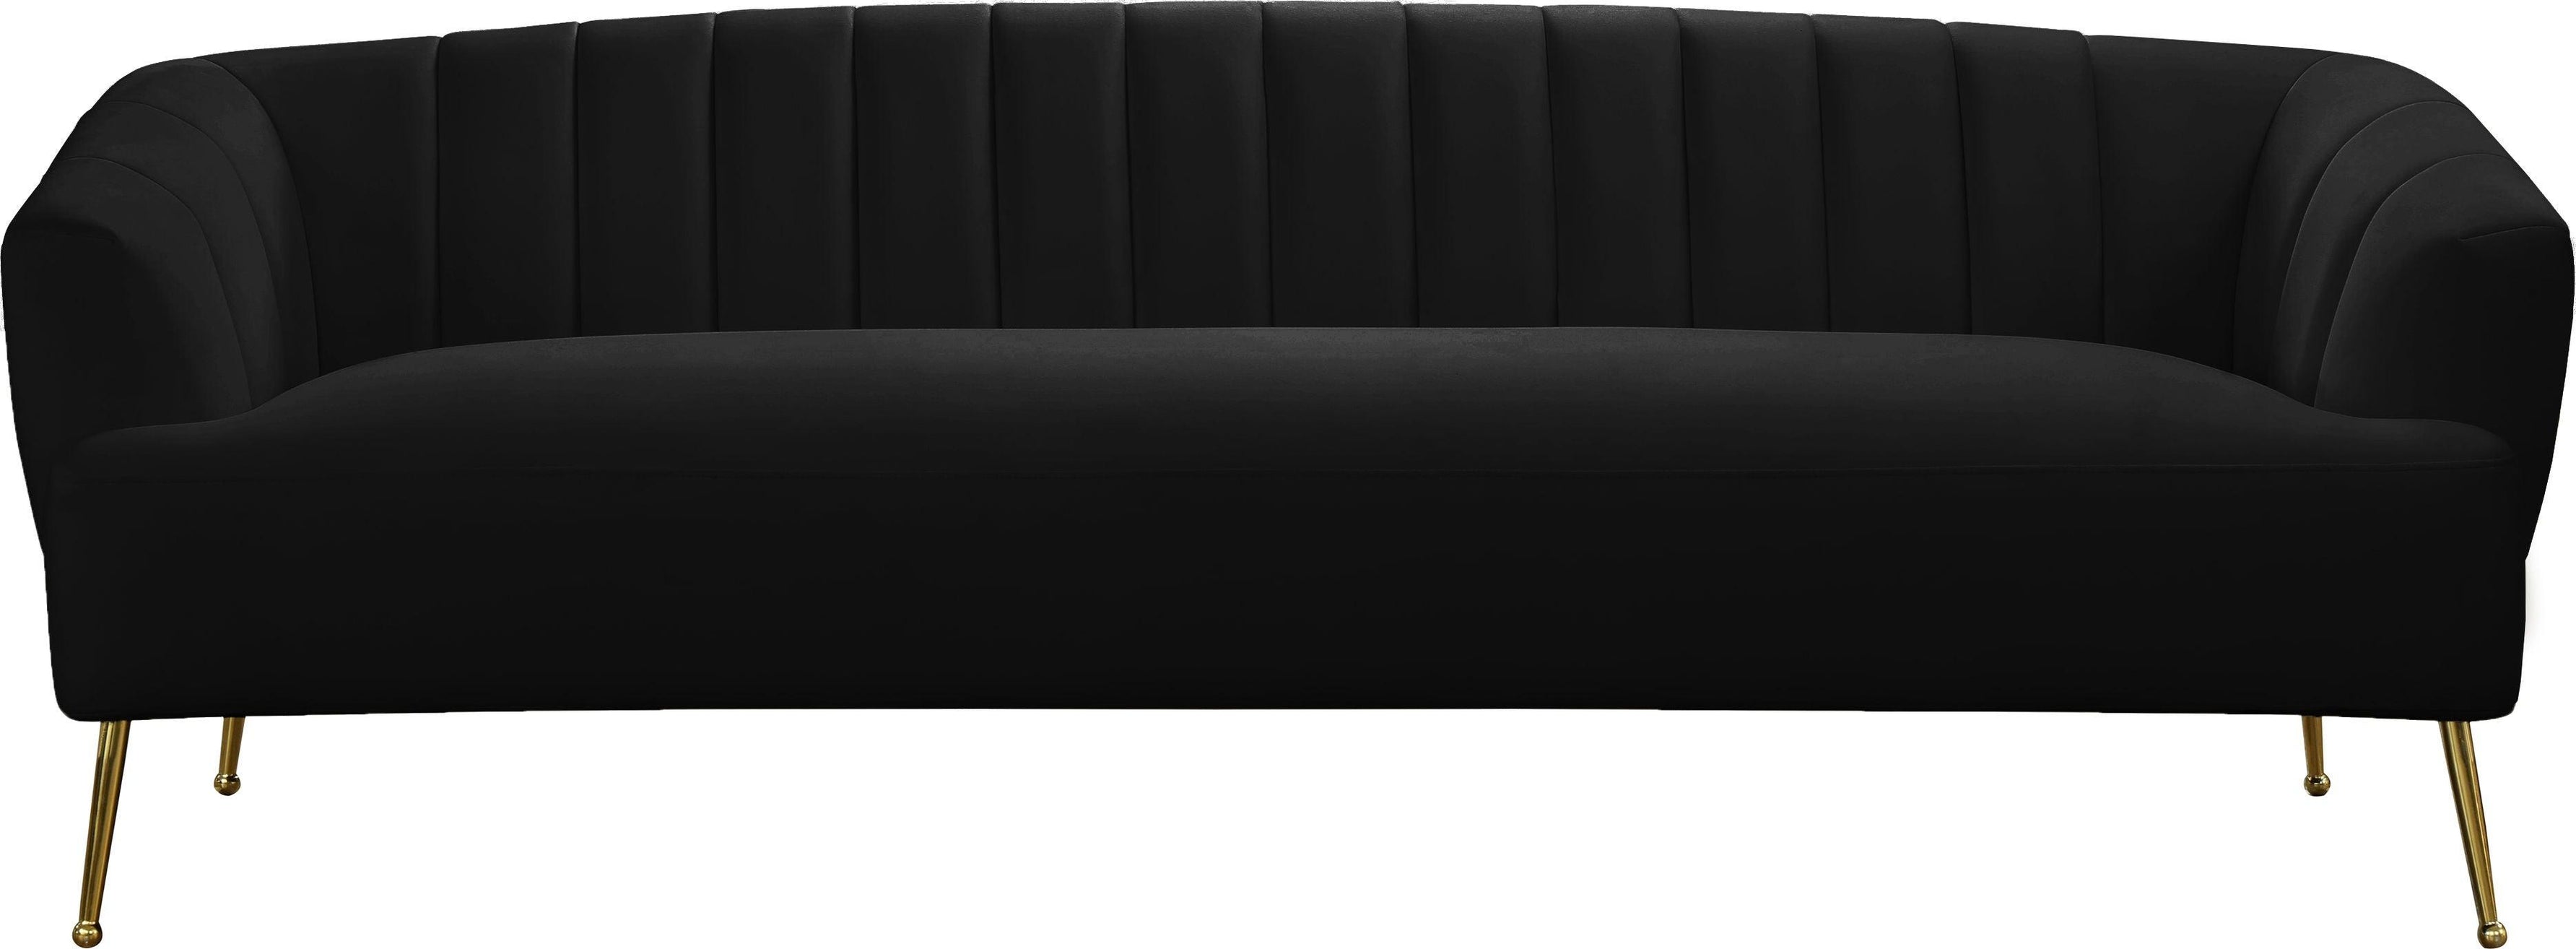 Meridian Furniture - Tori - Sofa - 5th Avenue Furniture